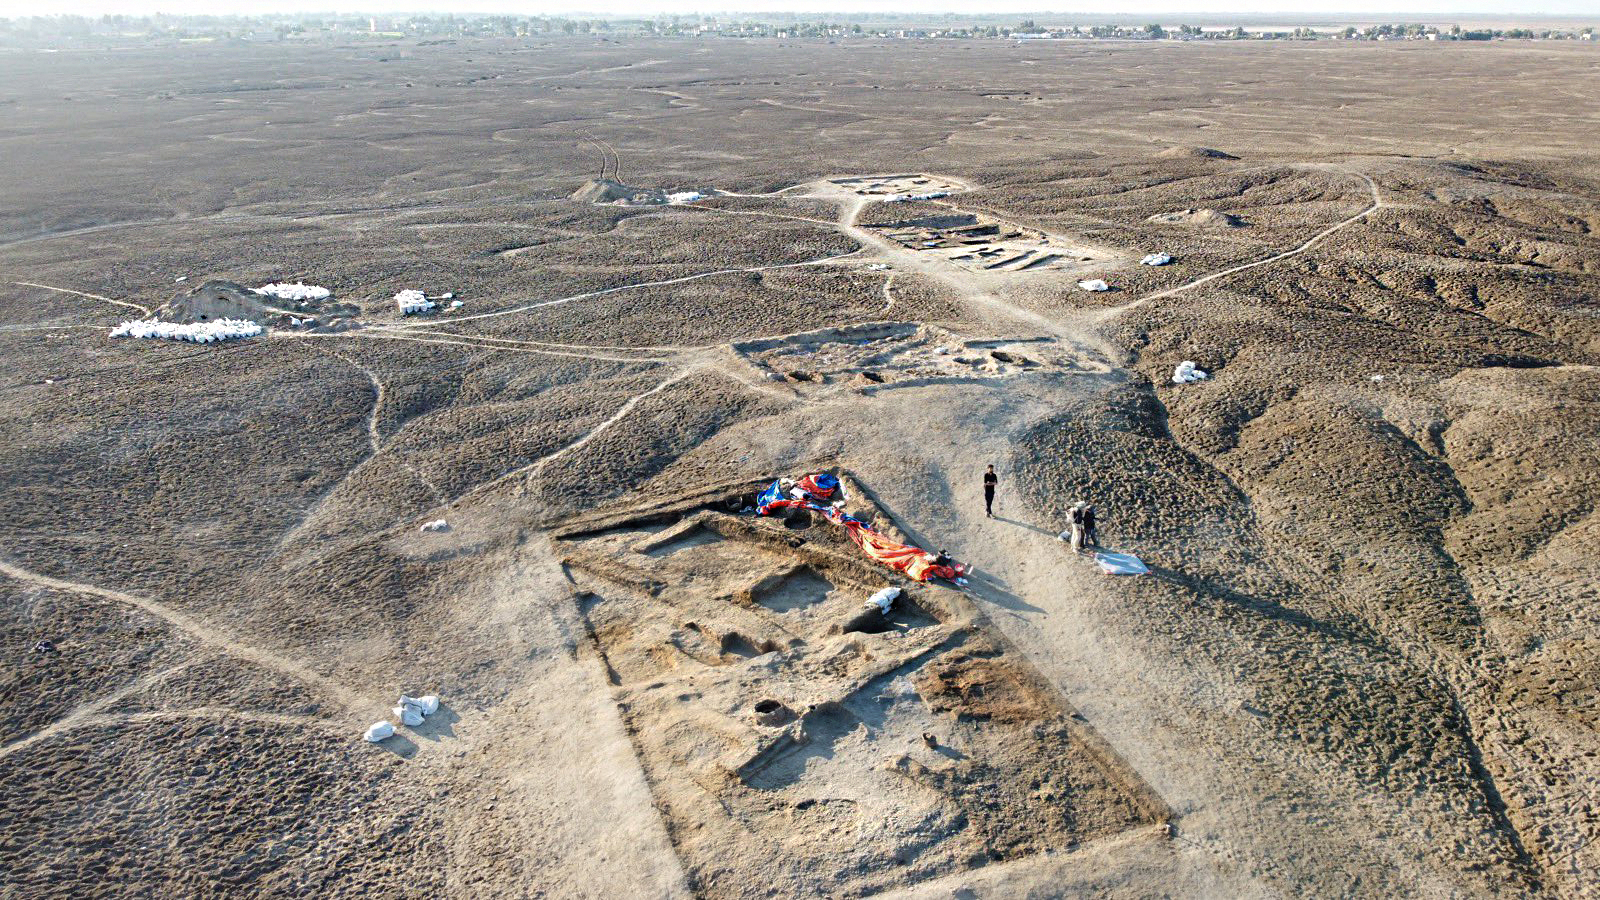 Investigadores del Museo Penn descubrieron una taberna de 5,000 años de antigüedad en Lagash en otoño 2022. (Cortesía del Proyecto Arqueológico de Lagash)